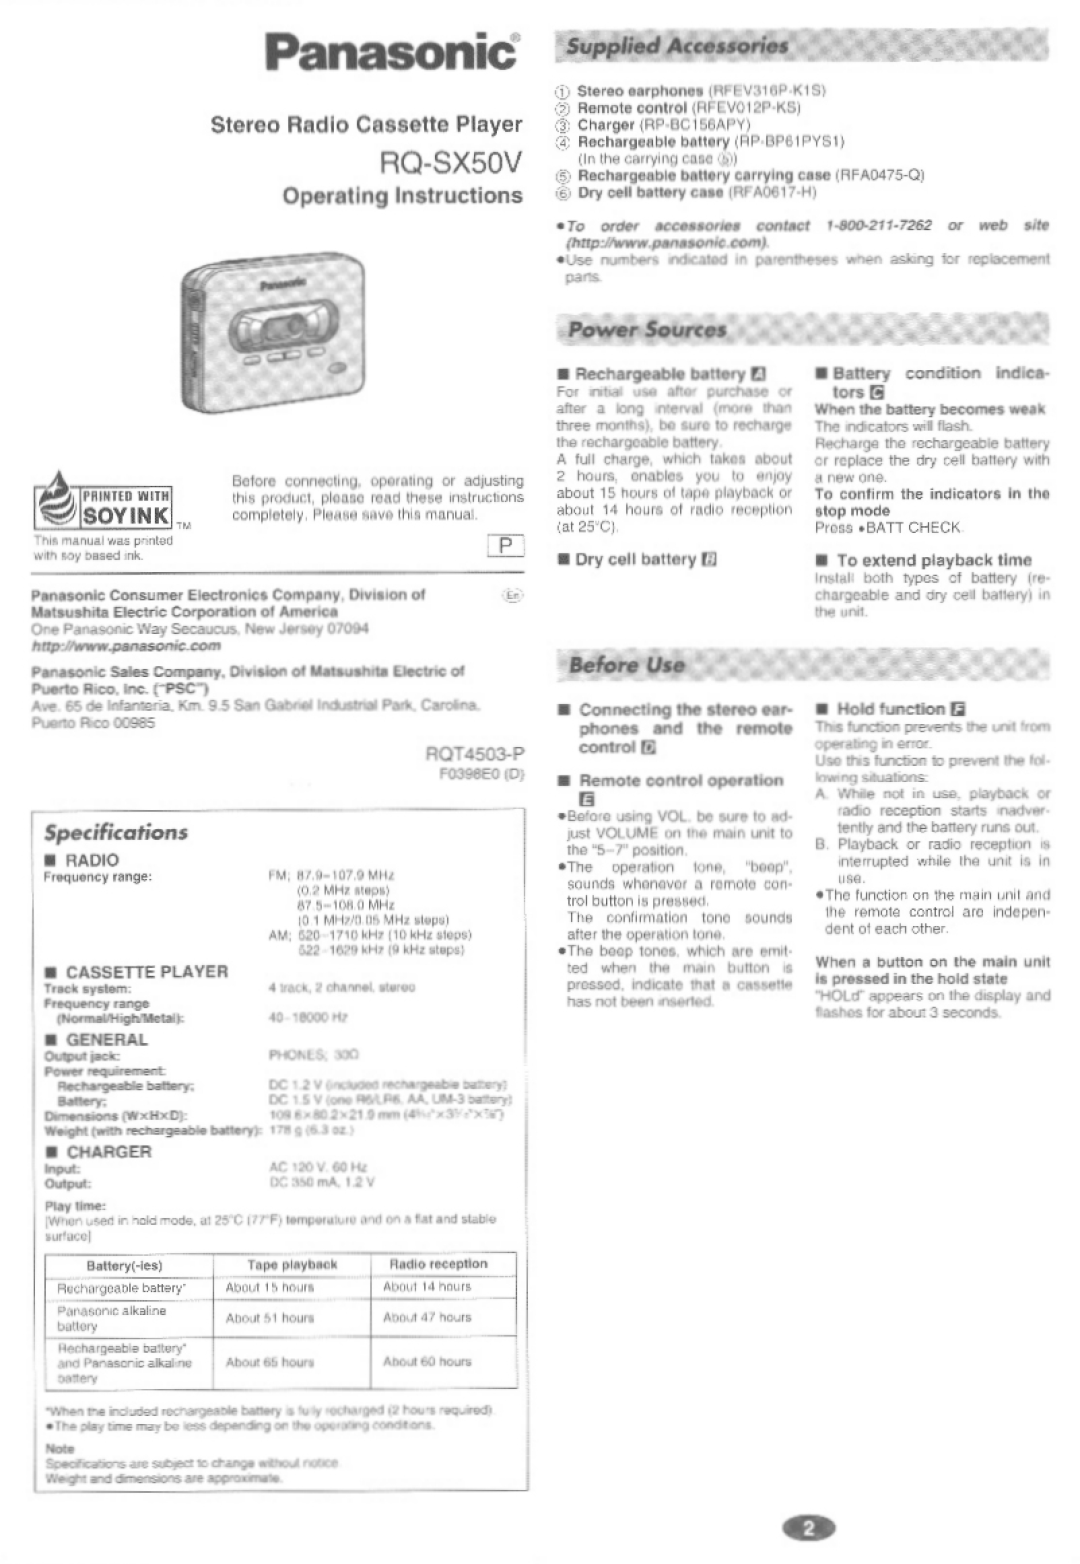 Panasonic RQ-SX50V manual 